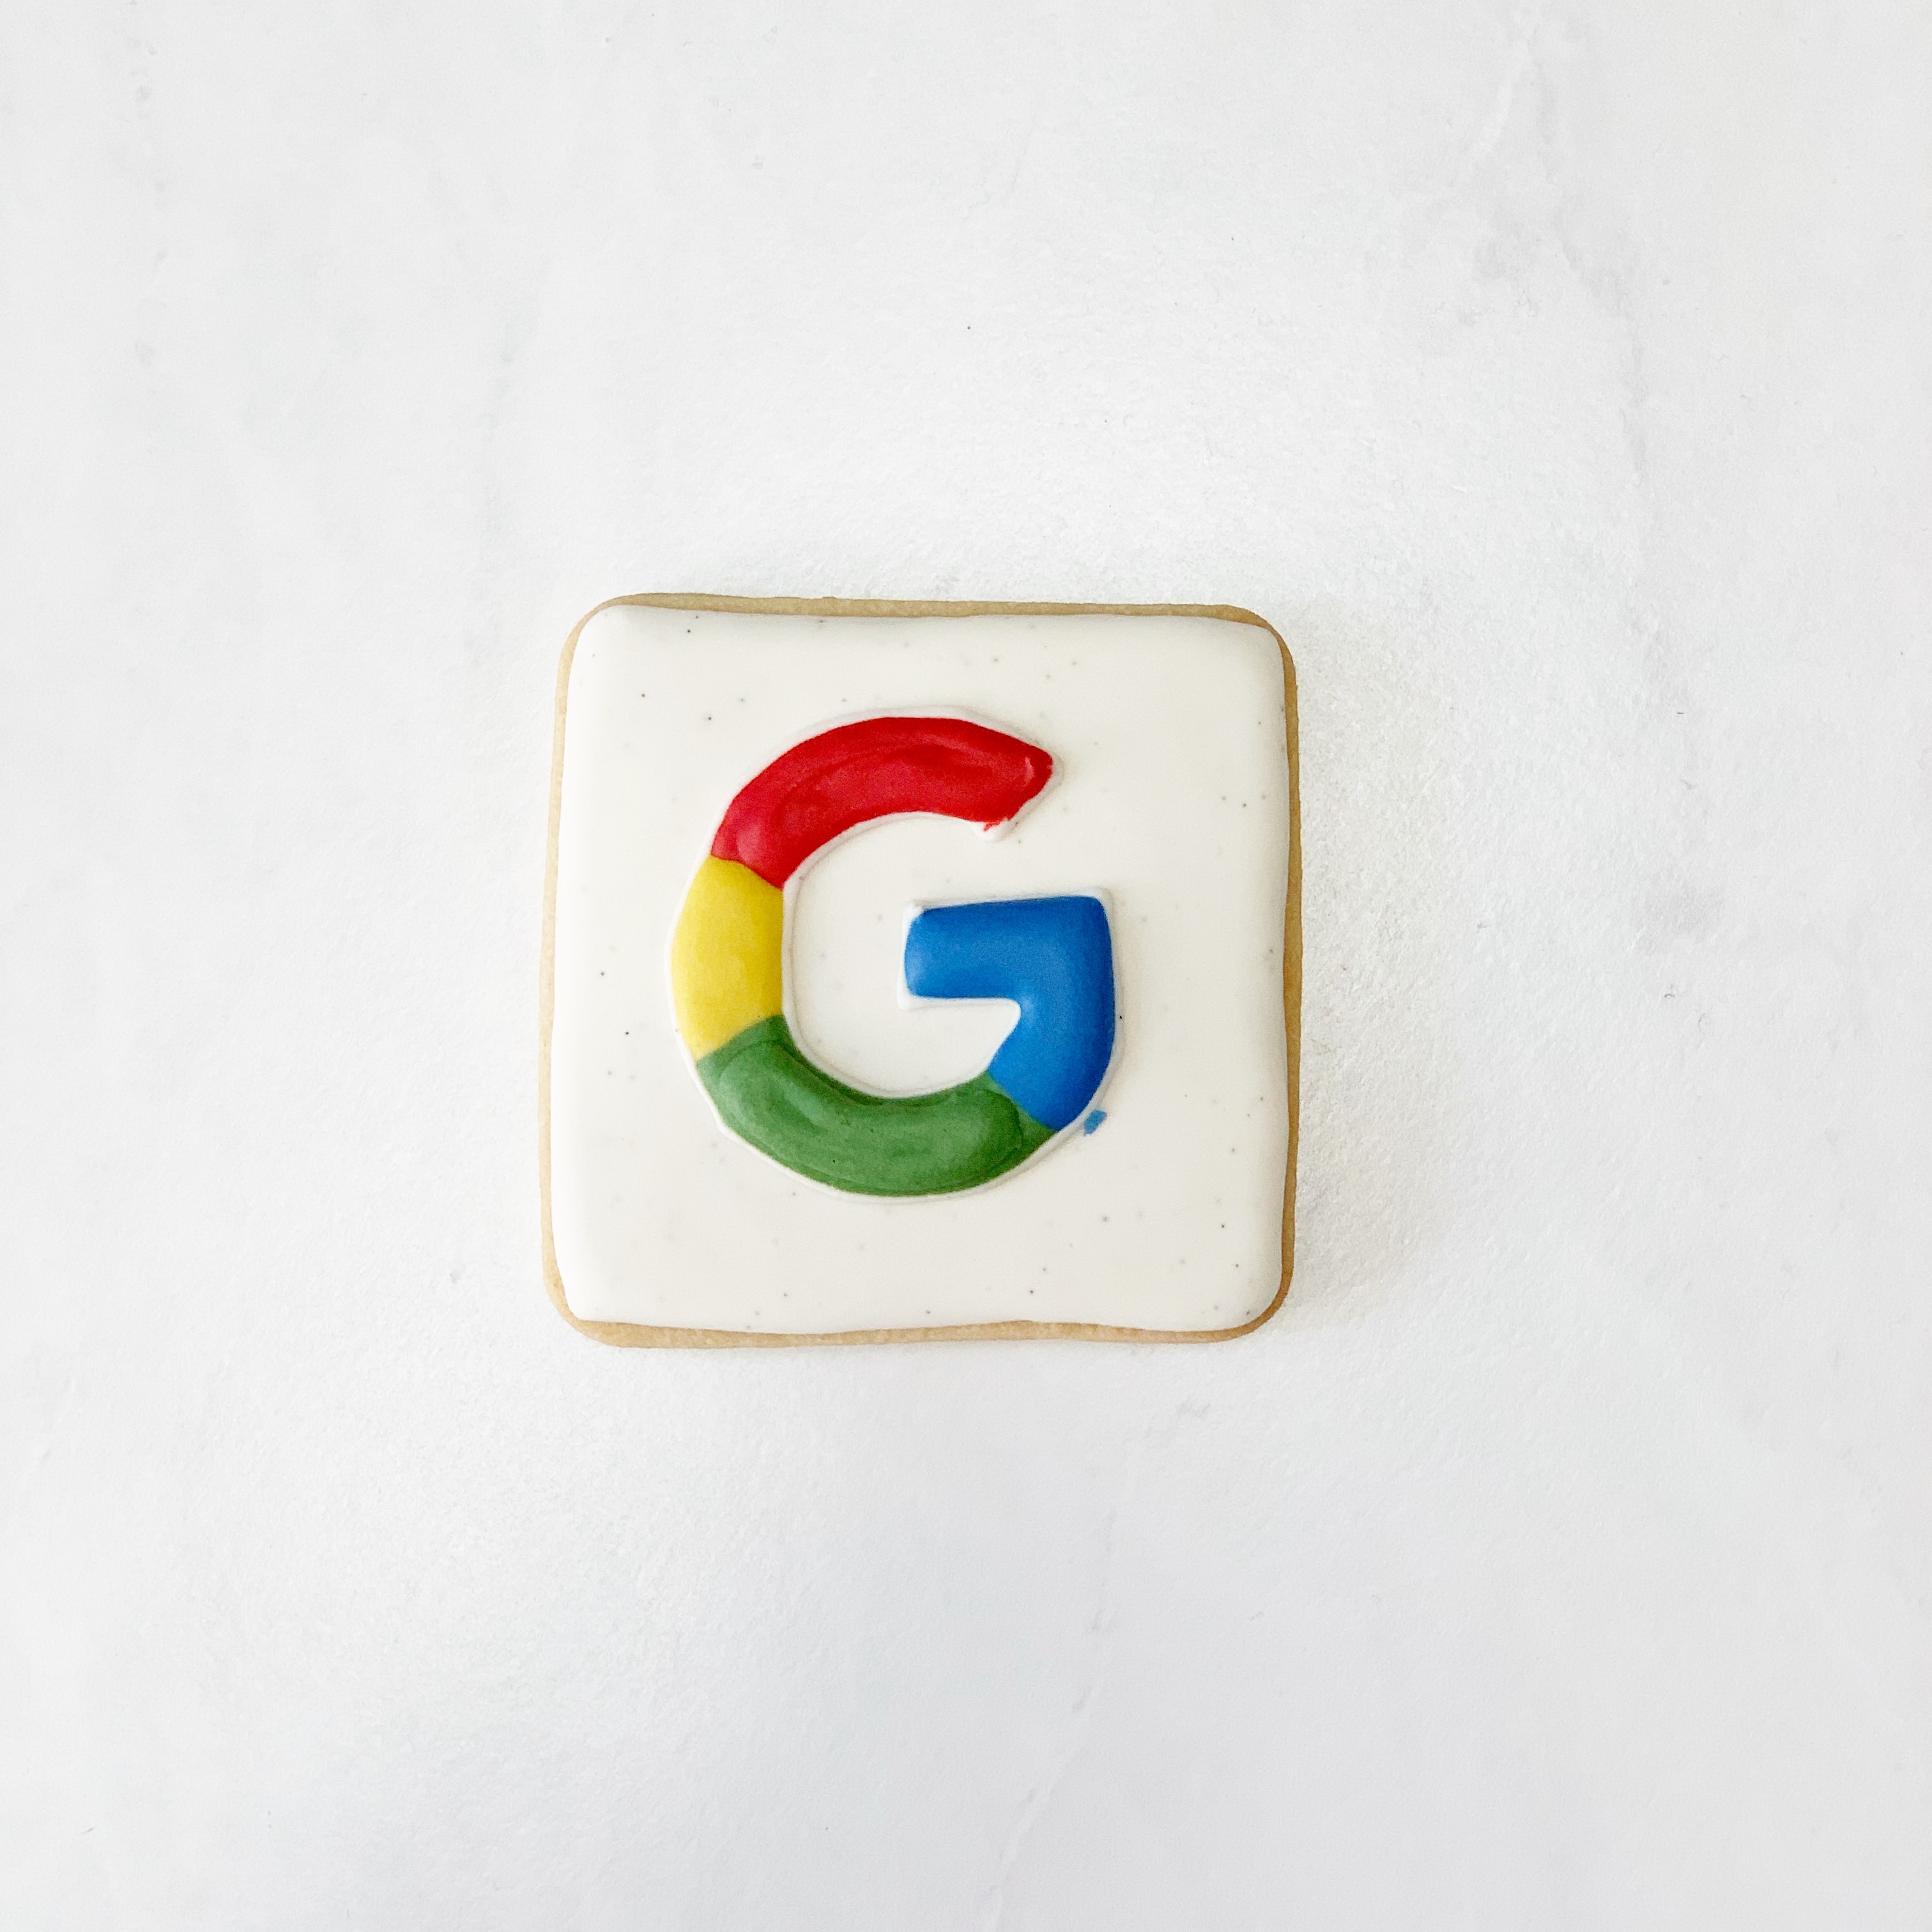 Lauren Edvalson @laurenedvalson Google themed iced biscuit